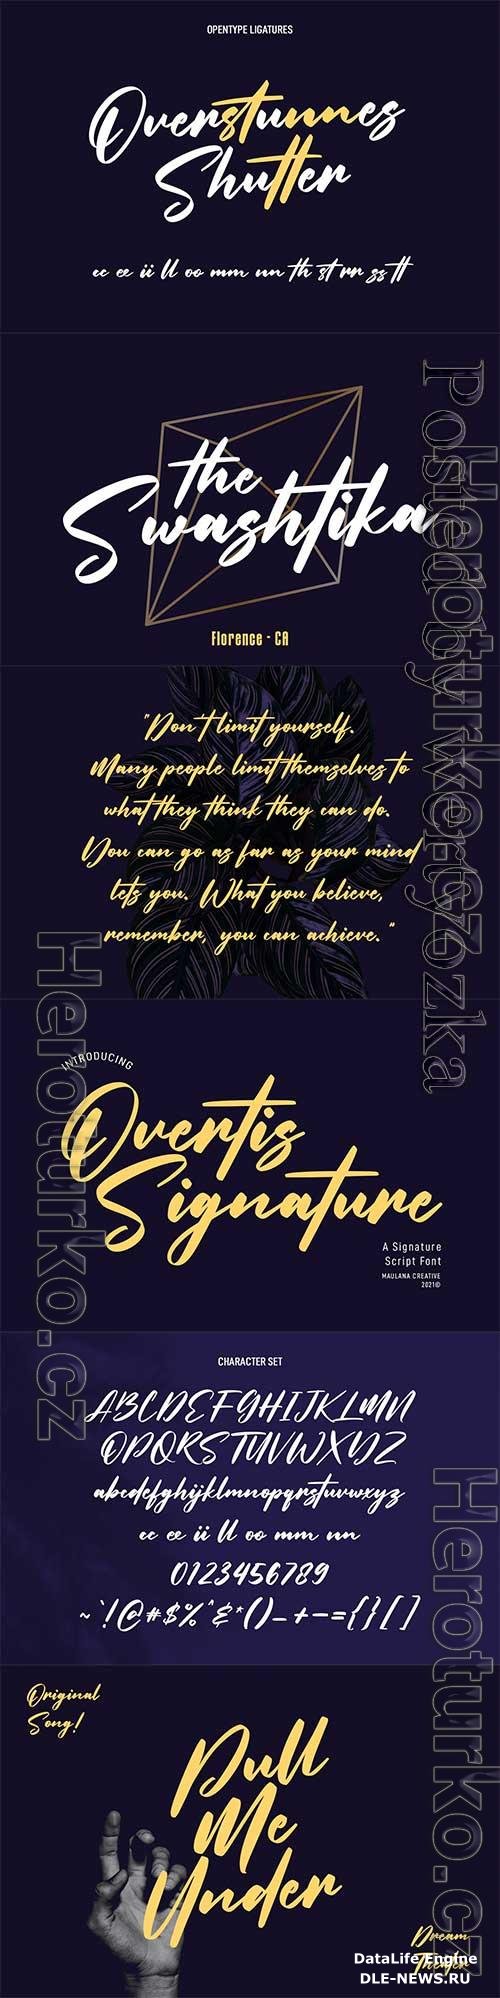 Overtis Signature Script Font 6361148